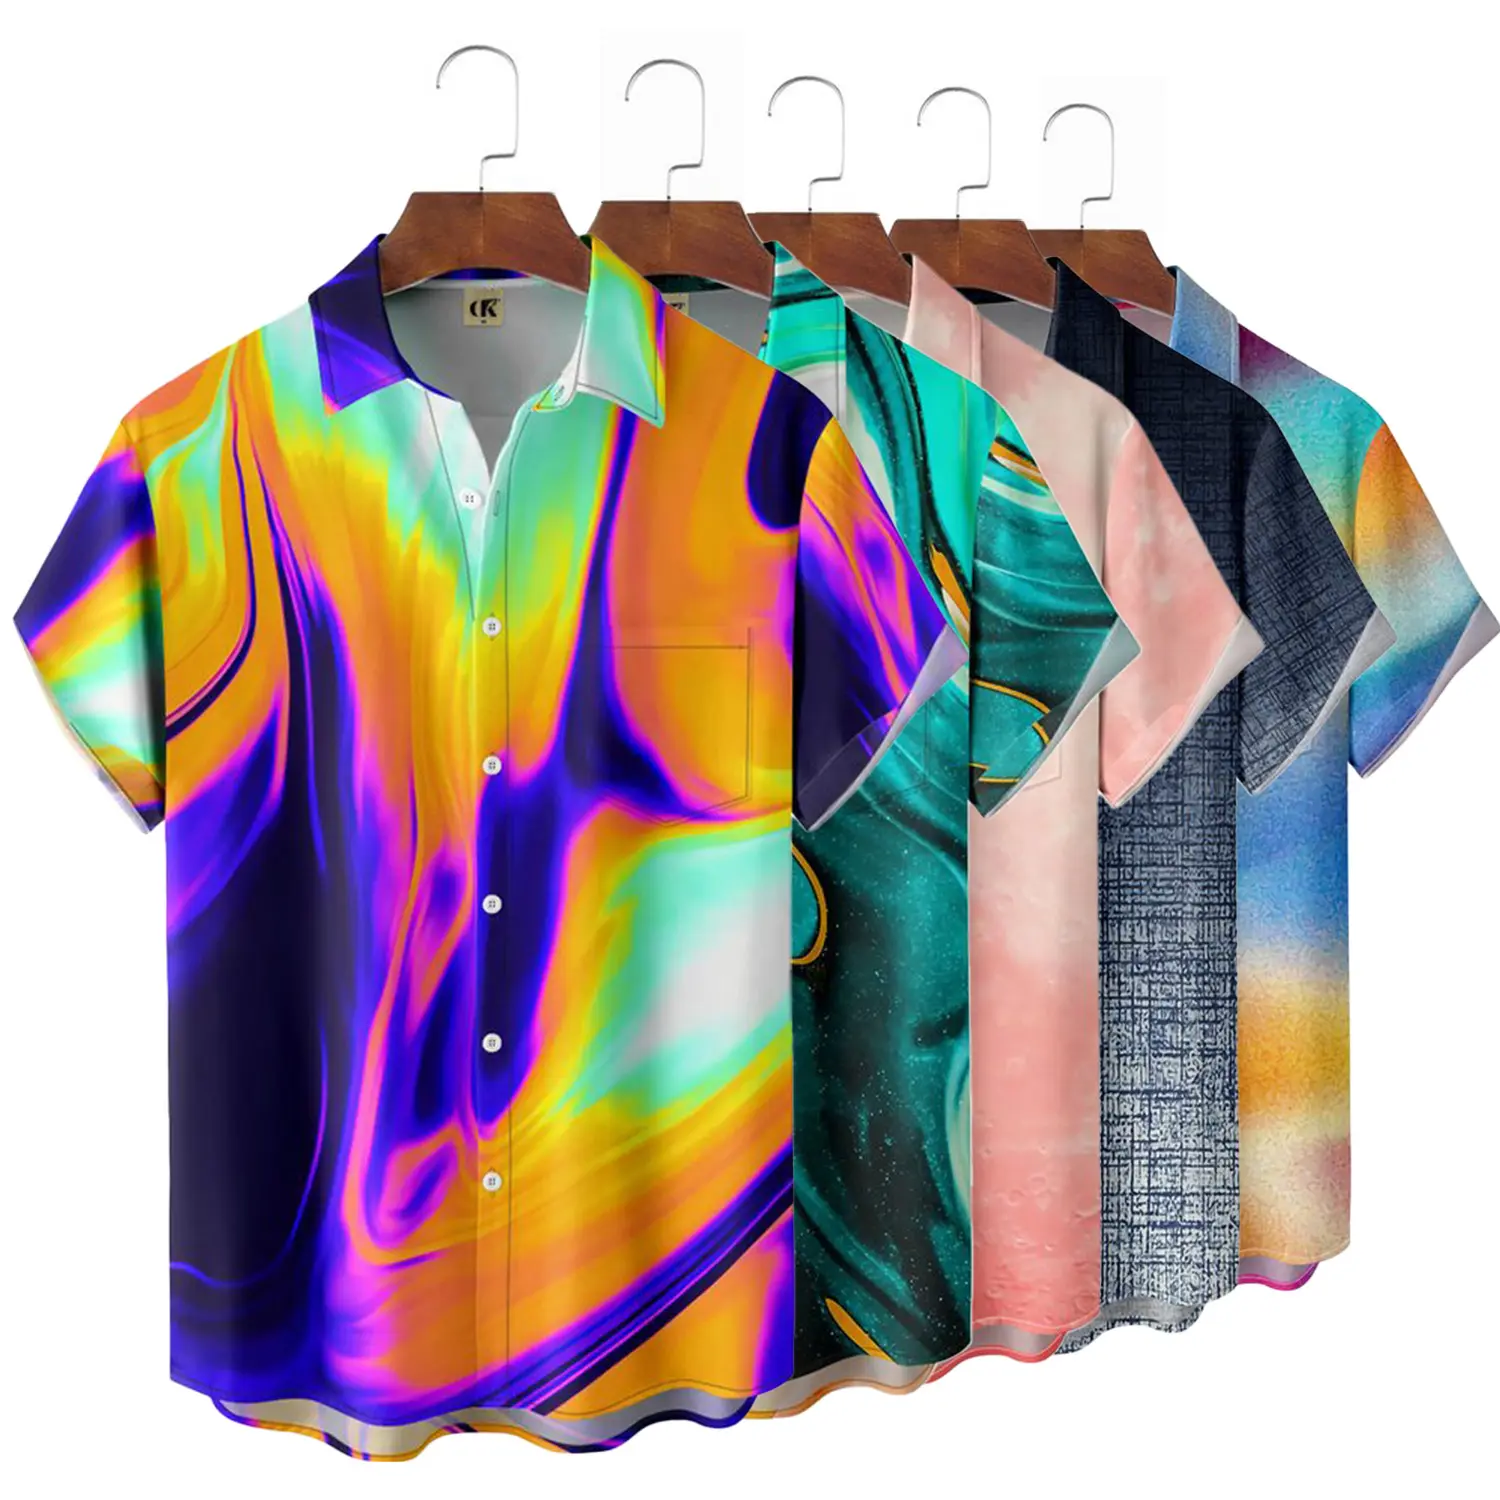 Nouveau Design personnalisé fabricant de vêtements hommes chemise de plage décontractée dégradé motif imprimé Polyester manches courtes Tops Blouse